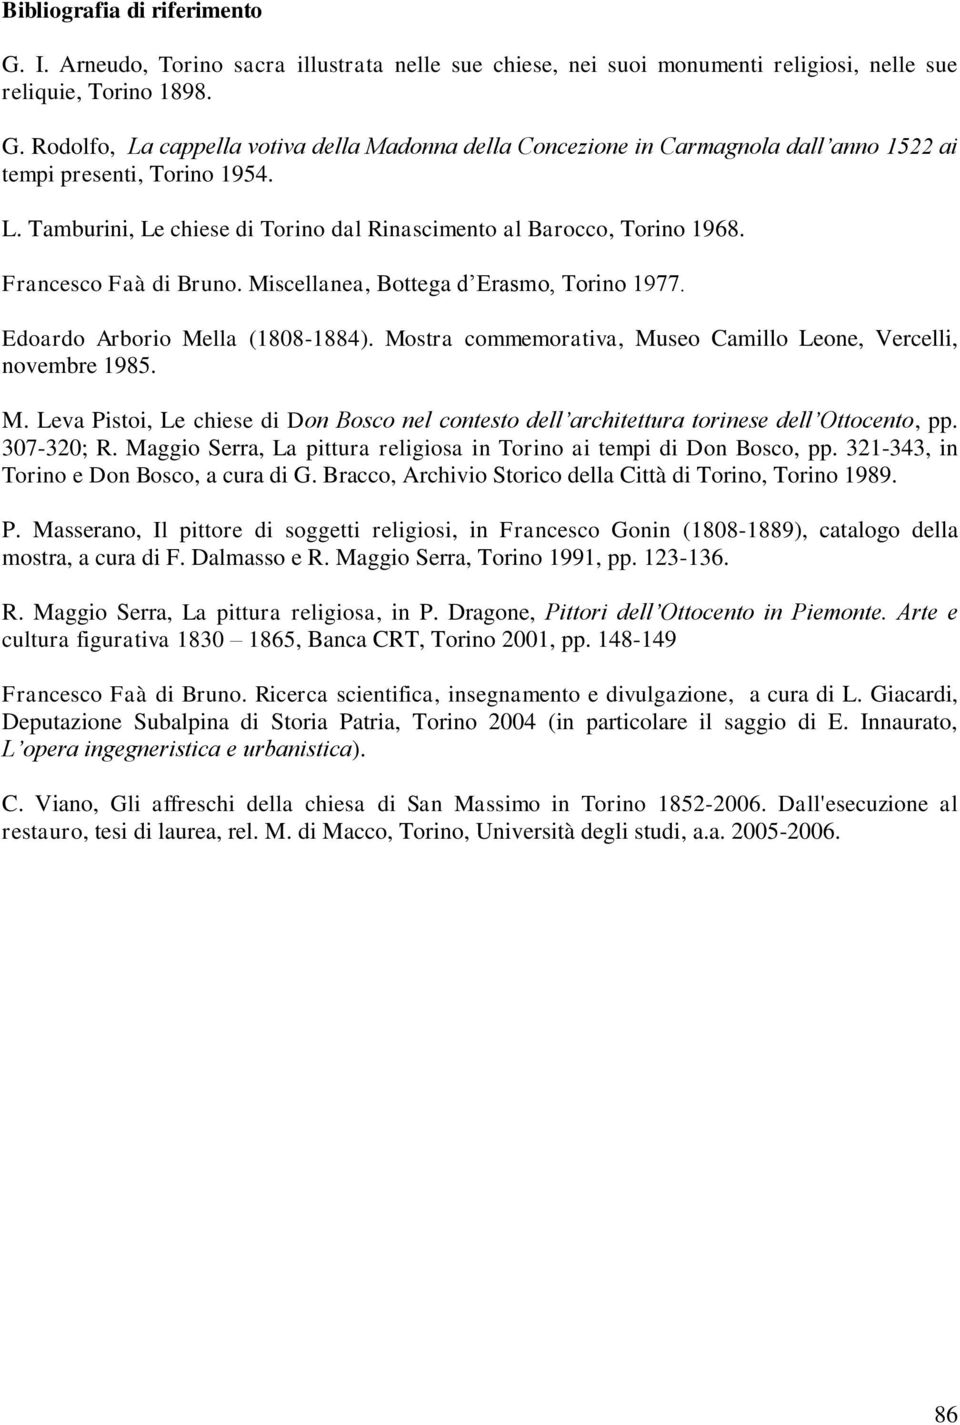 Mostra commemorativa, Museo Camillo Leone, Vercelli, novembre 1985. M. Leva Pistoi, Le chiese di Don Bosco nel contesto dell architettura torinese dell Ottocento, pp. 307-320; R.